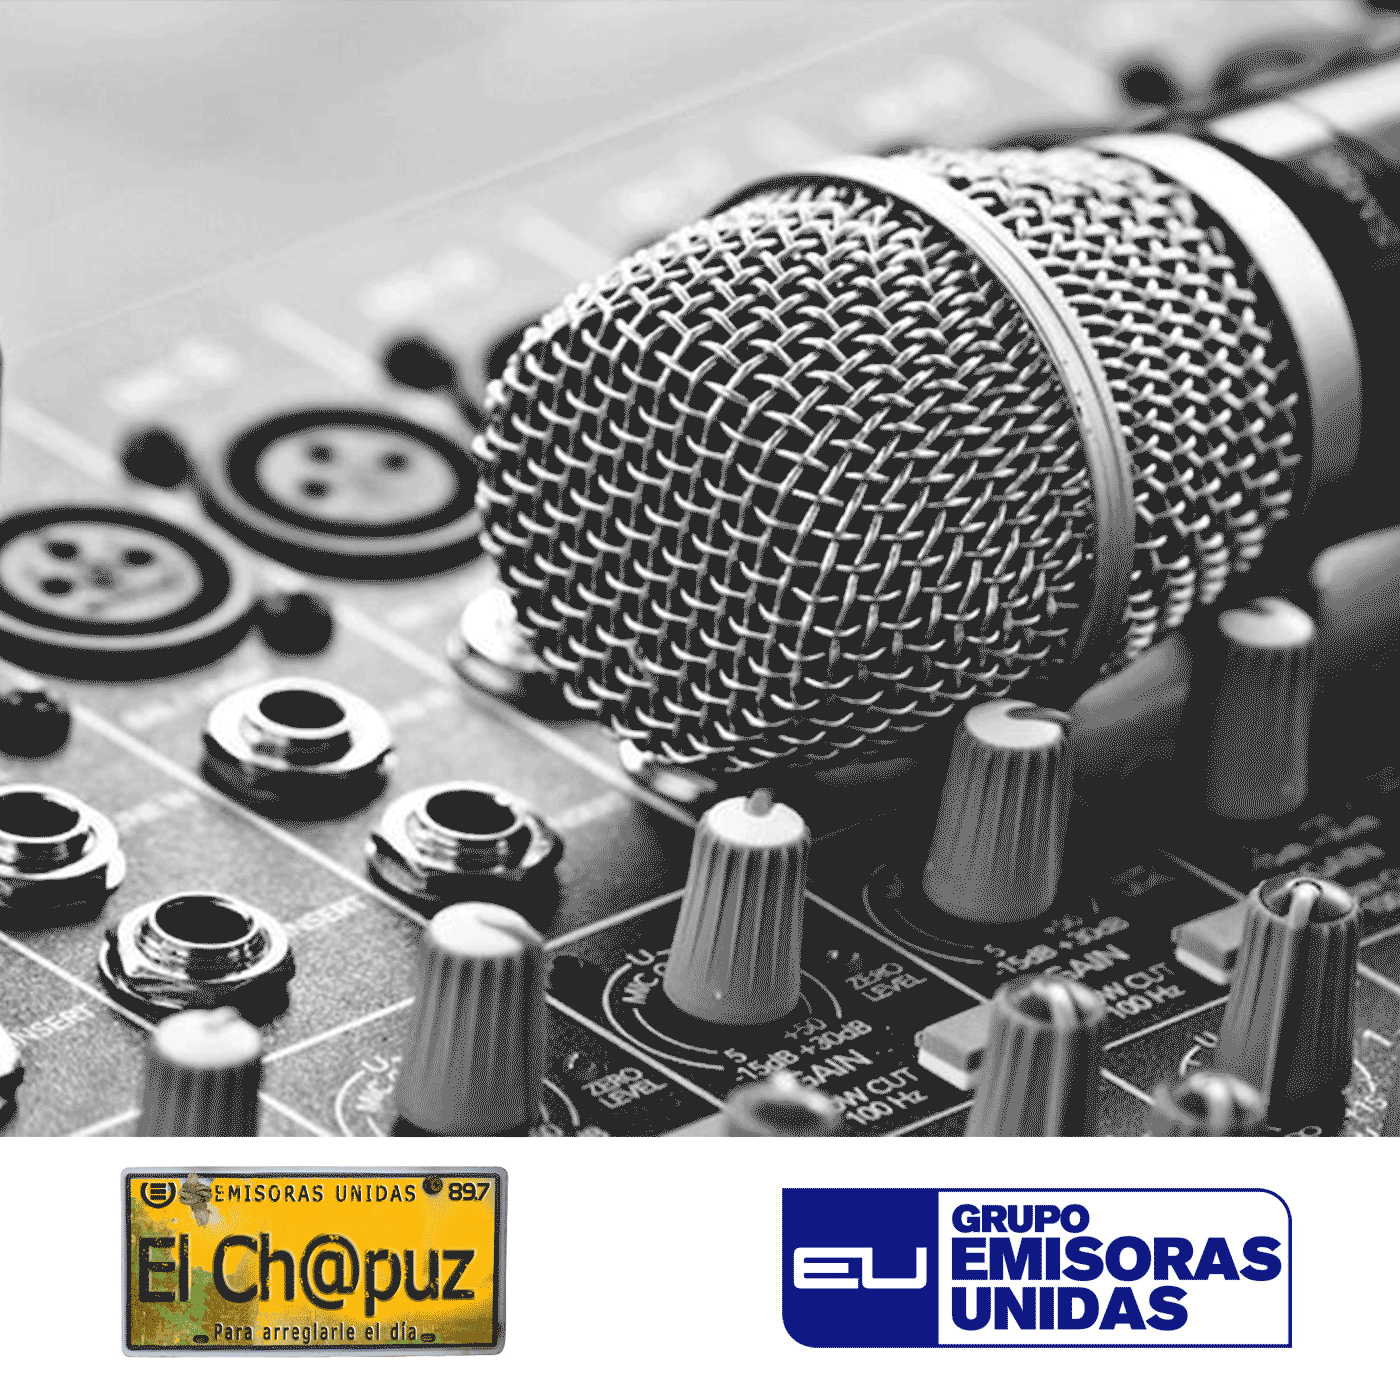 EC47 - El Chapuz - Emisoras unidas - #Quinielas